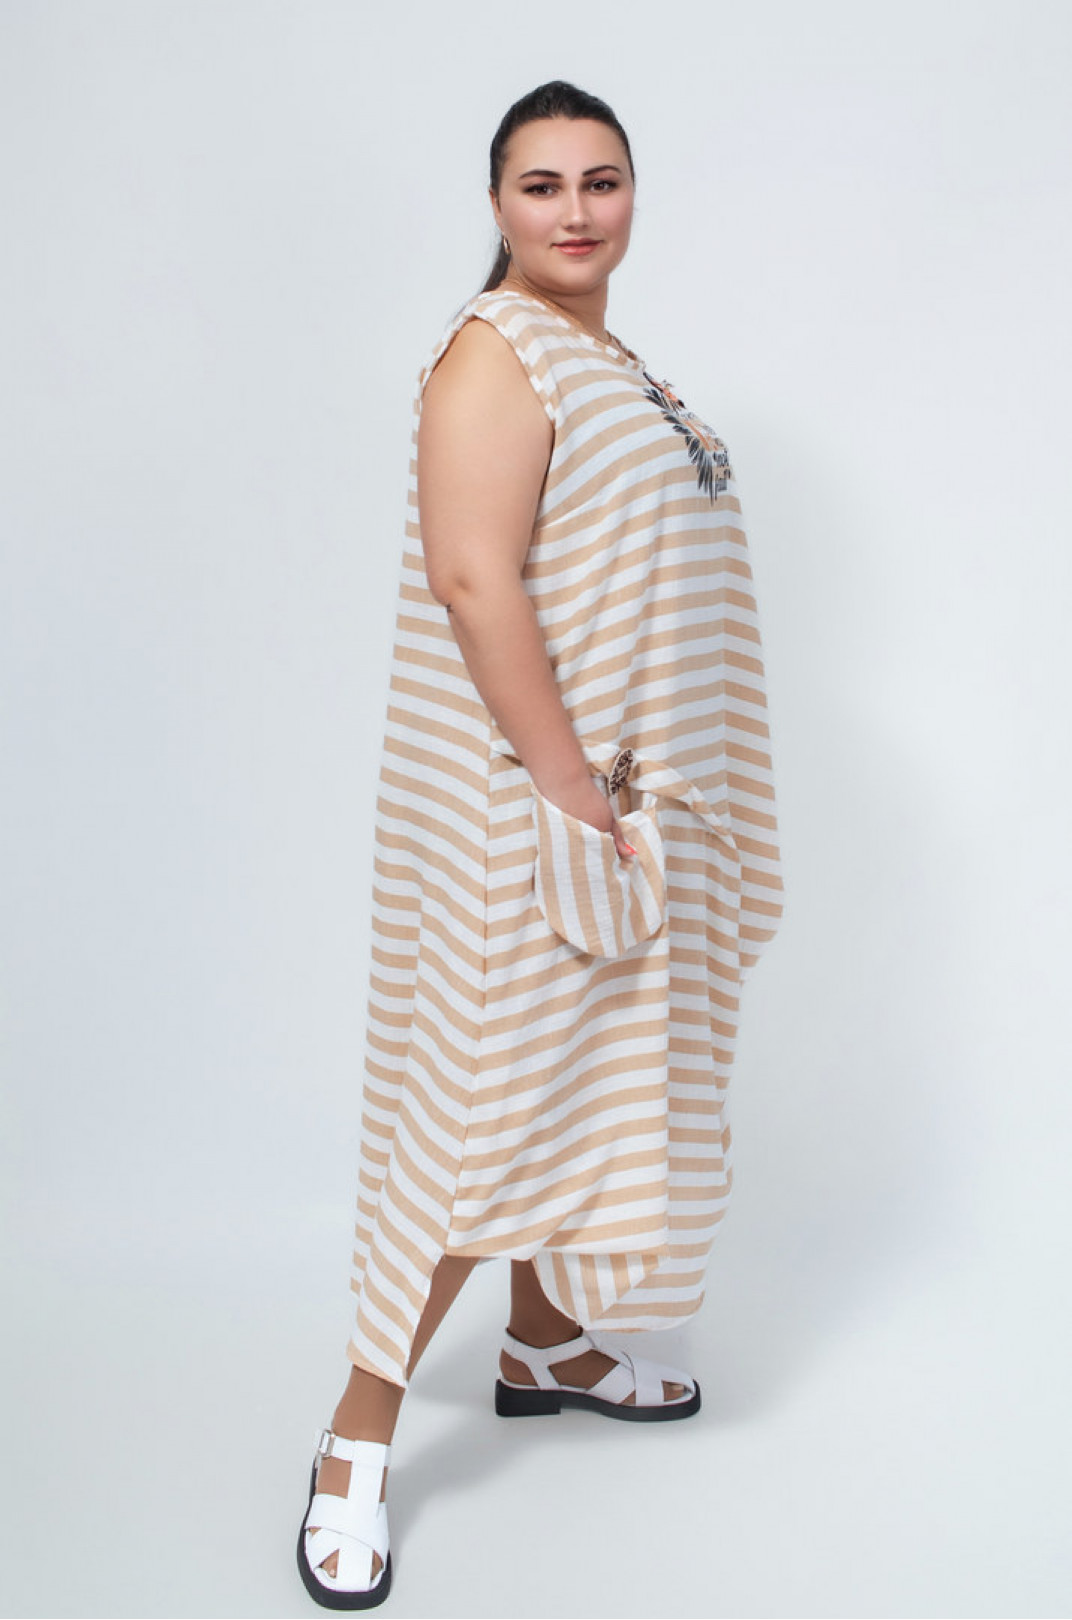 Сарафан-платье в горизонтальную полоску с украшениями батал